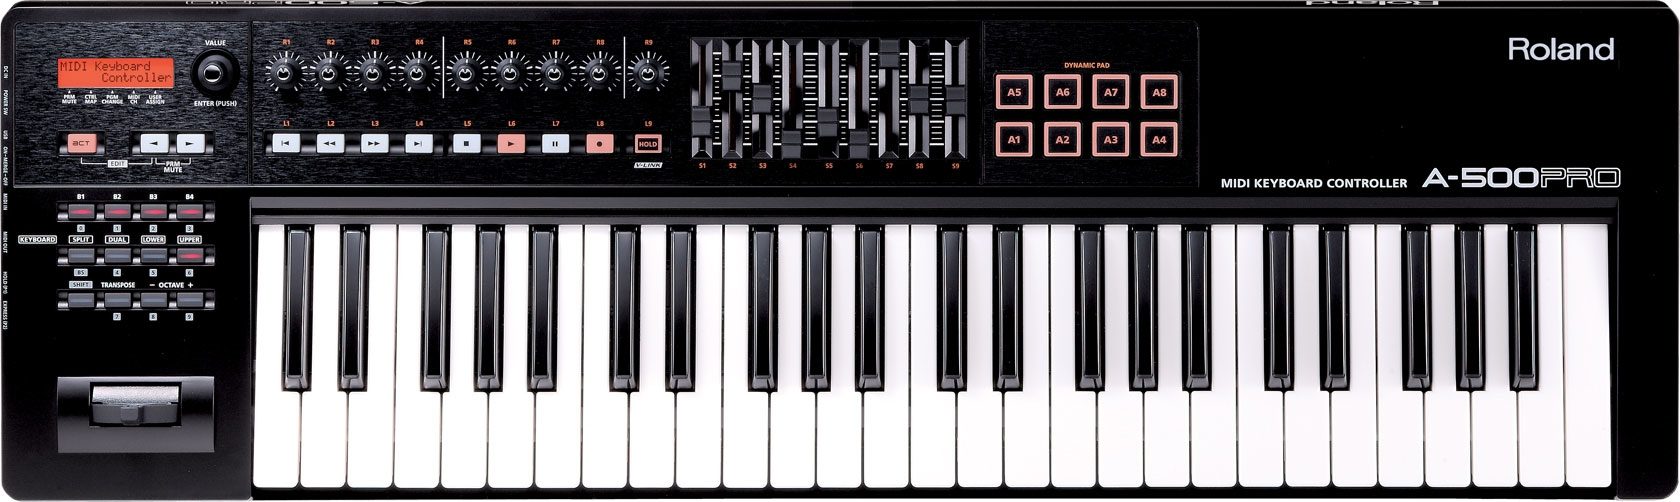 Roland A-500PRO USB/MIDI Keyboard Controller (49-Key)